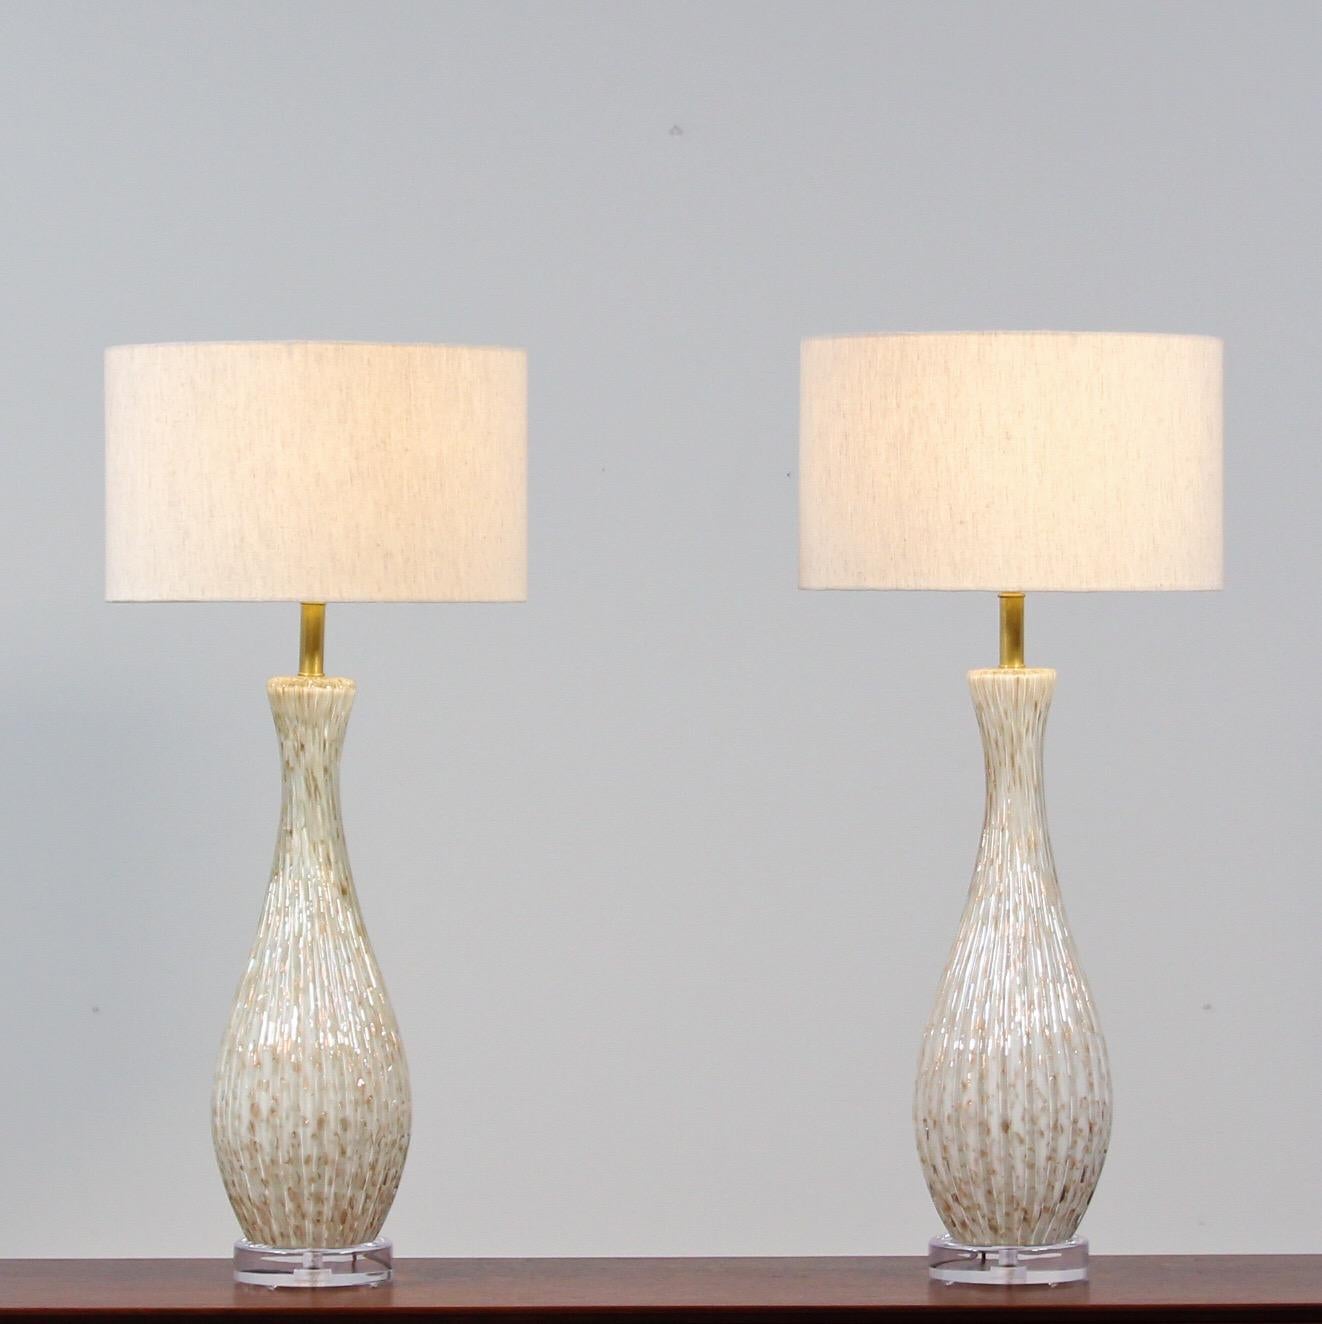 Impressionnante paire de lampes en verre de Murano des années 1950, présentant une merveilleuse technique de mouchetures dorées et de bulles encastrées (bullicante) sur un fond blanc par Alfredo Barbini. Ces magnifiques lampes ont été nouvellement